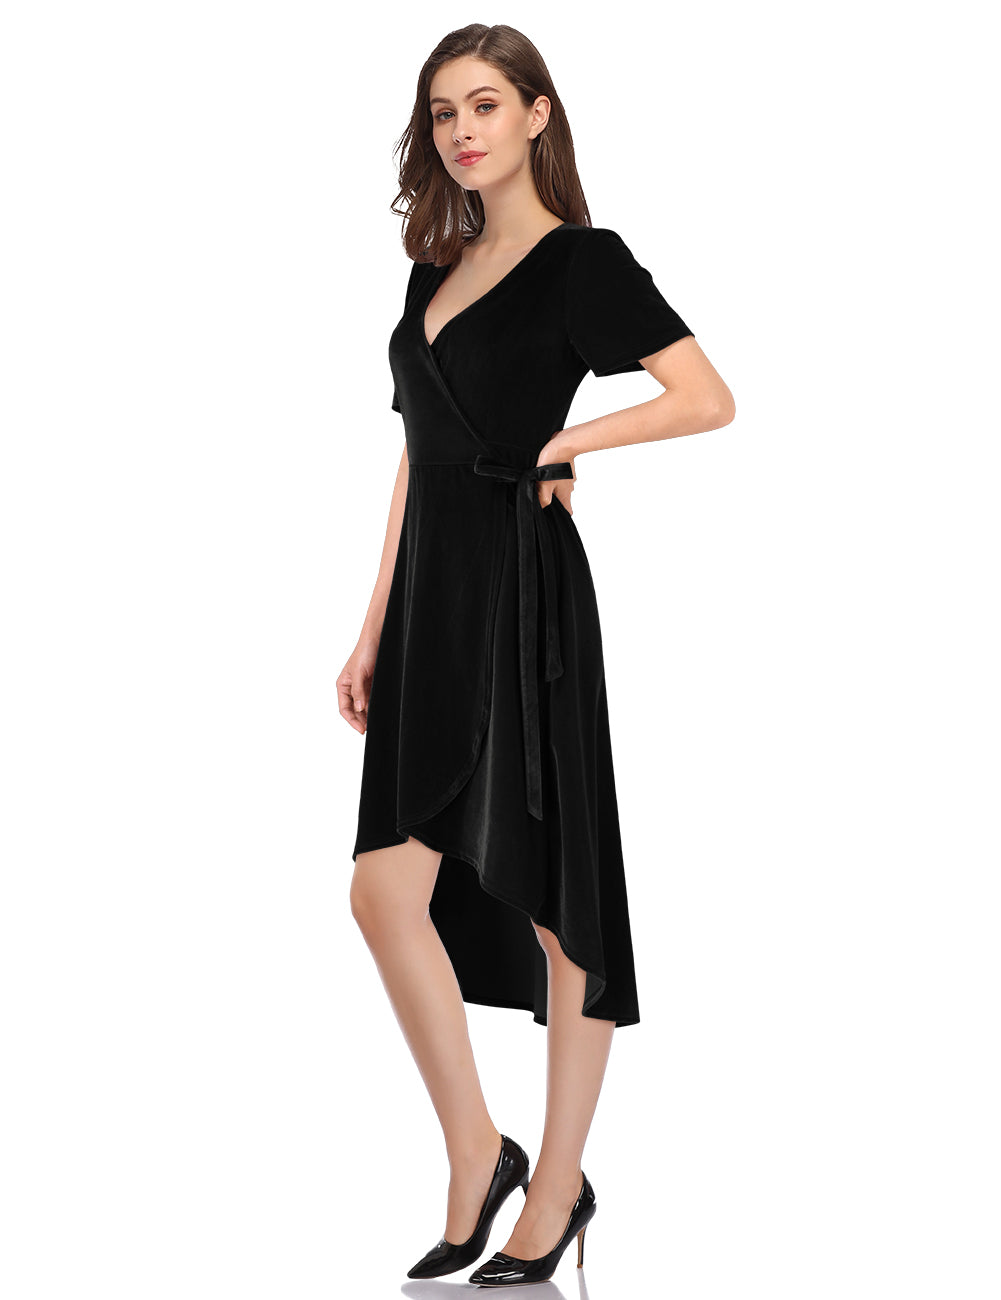 YESFASHION Women Velvet V-Neck Short Sleeve Empire Party Midi Dress Black